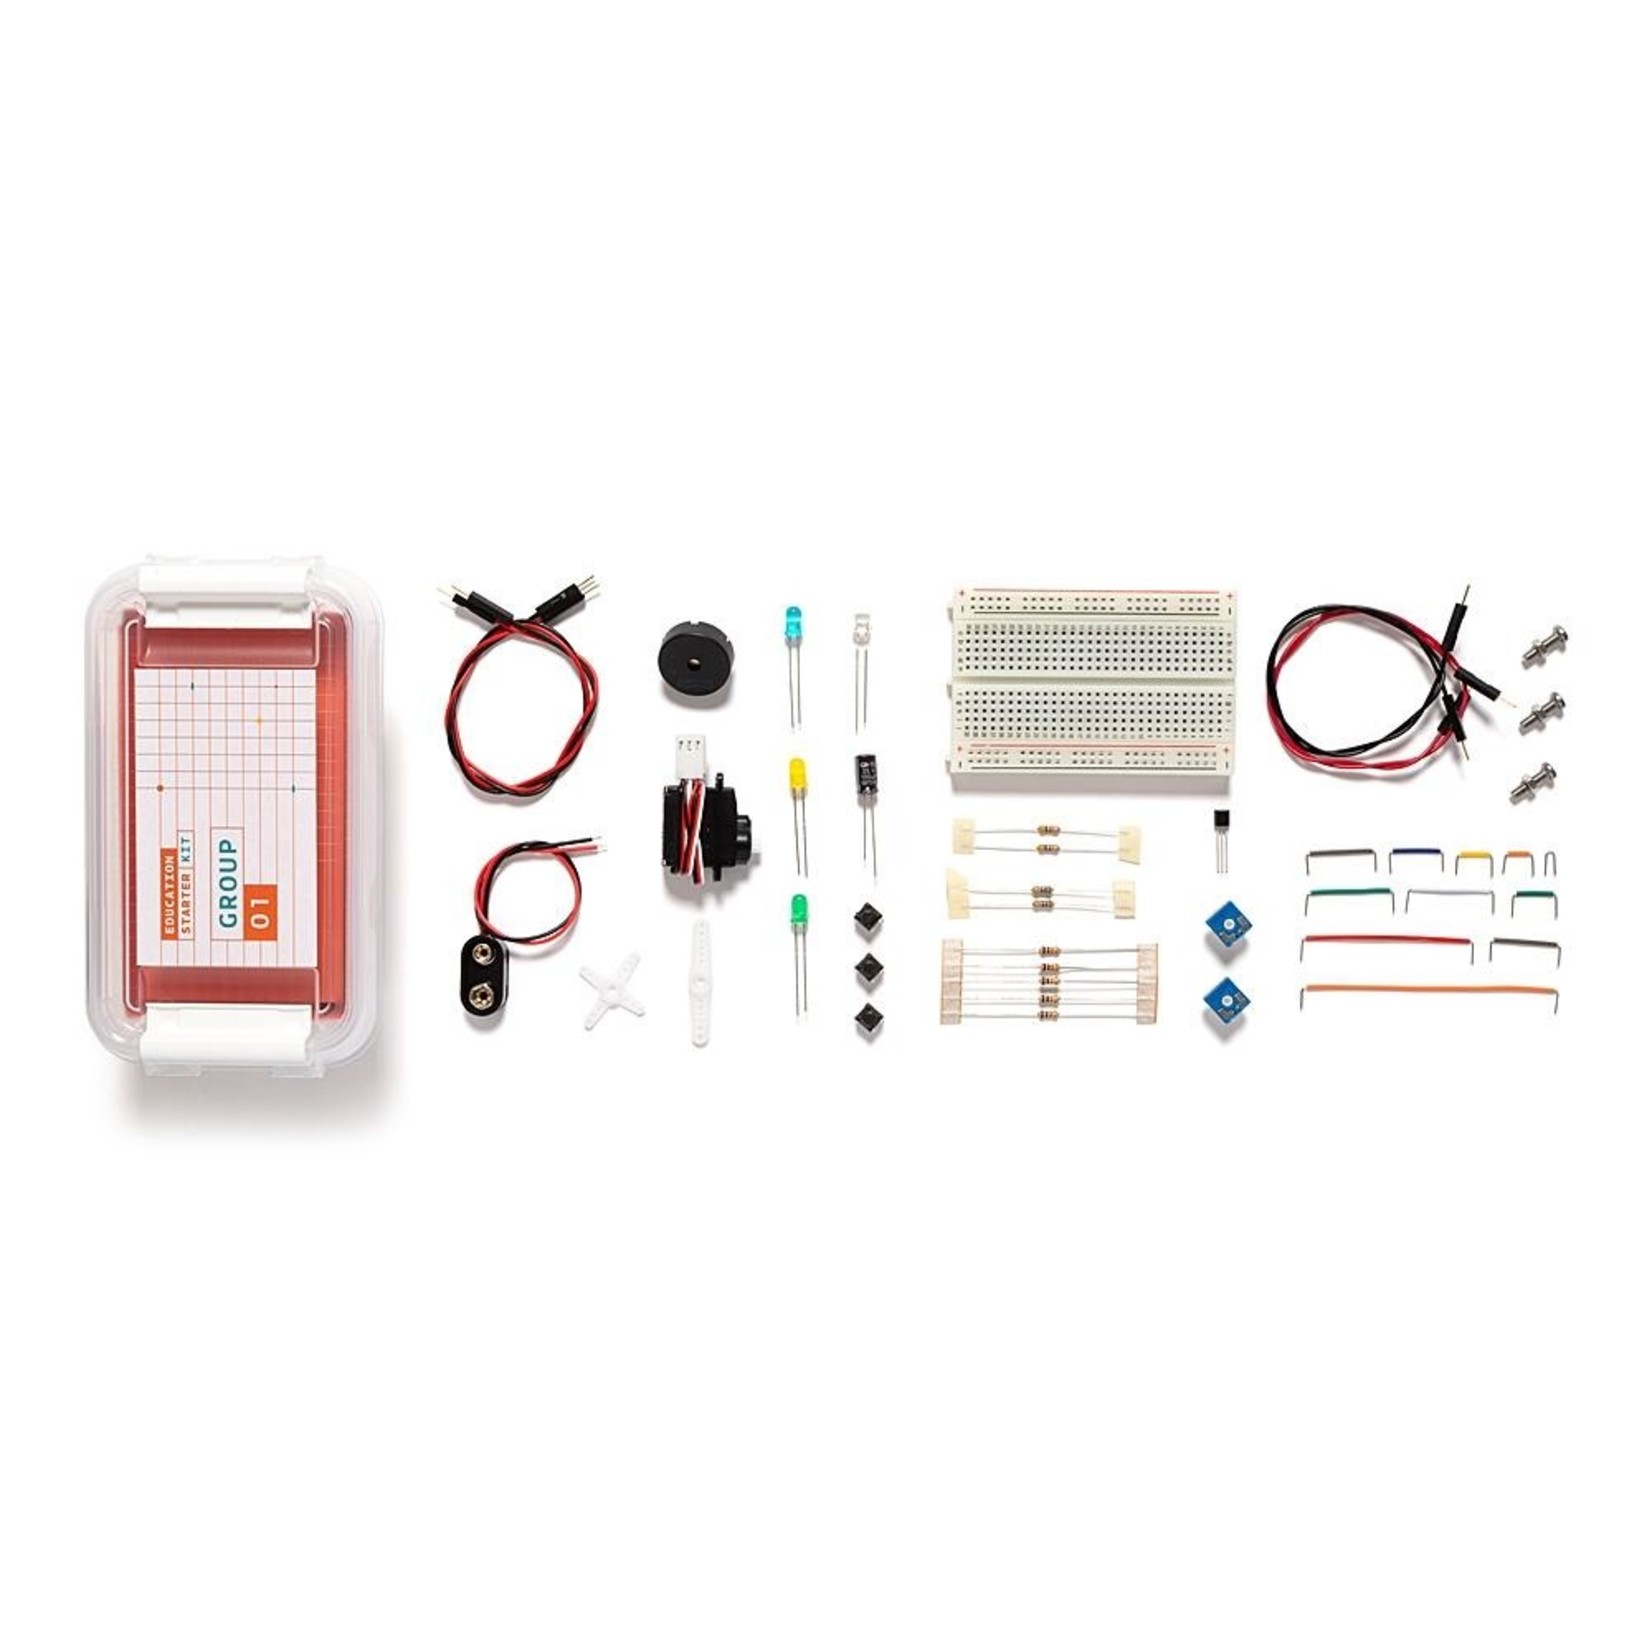 ARDUINO Arduino Education Starter Kit